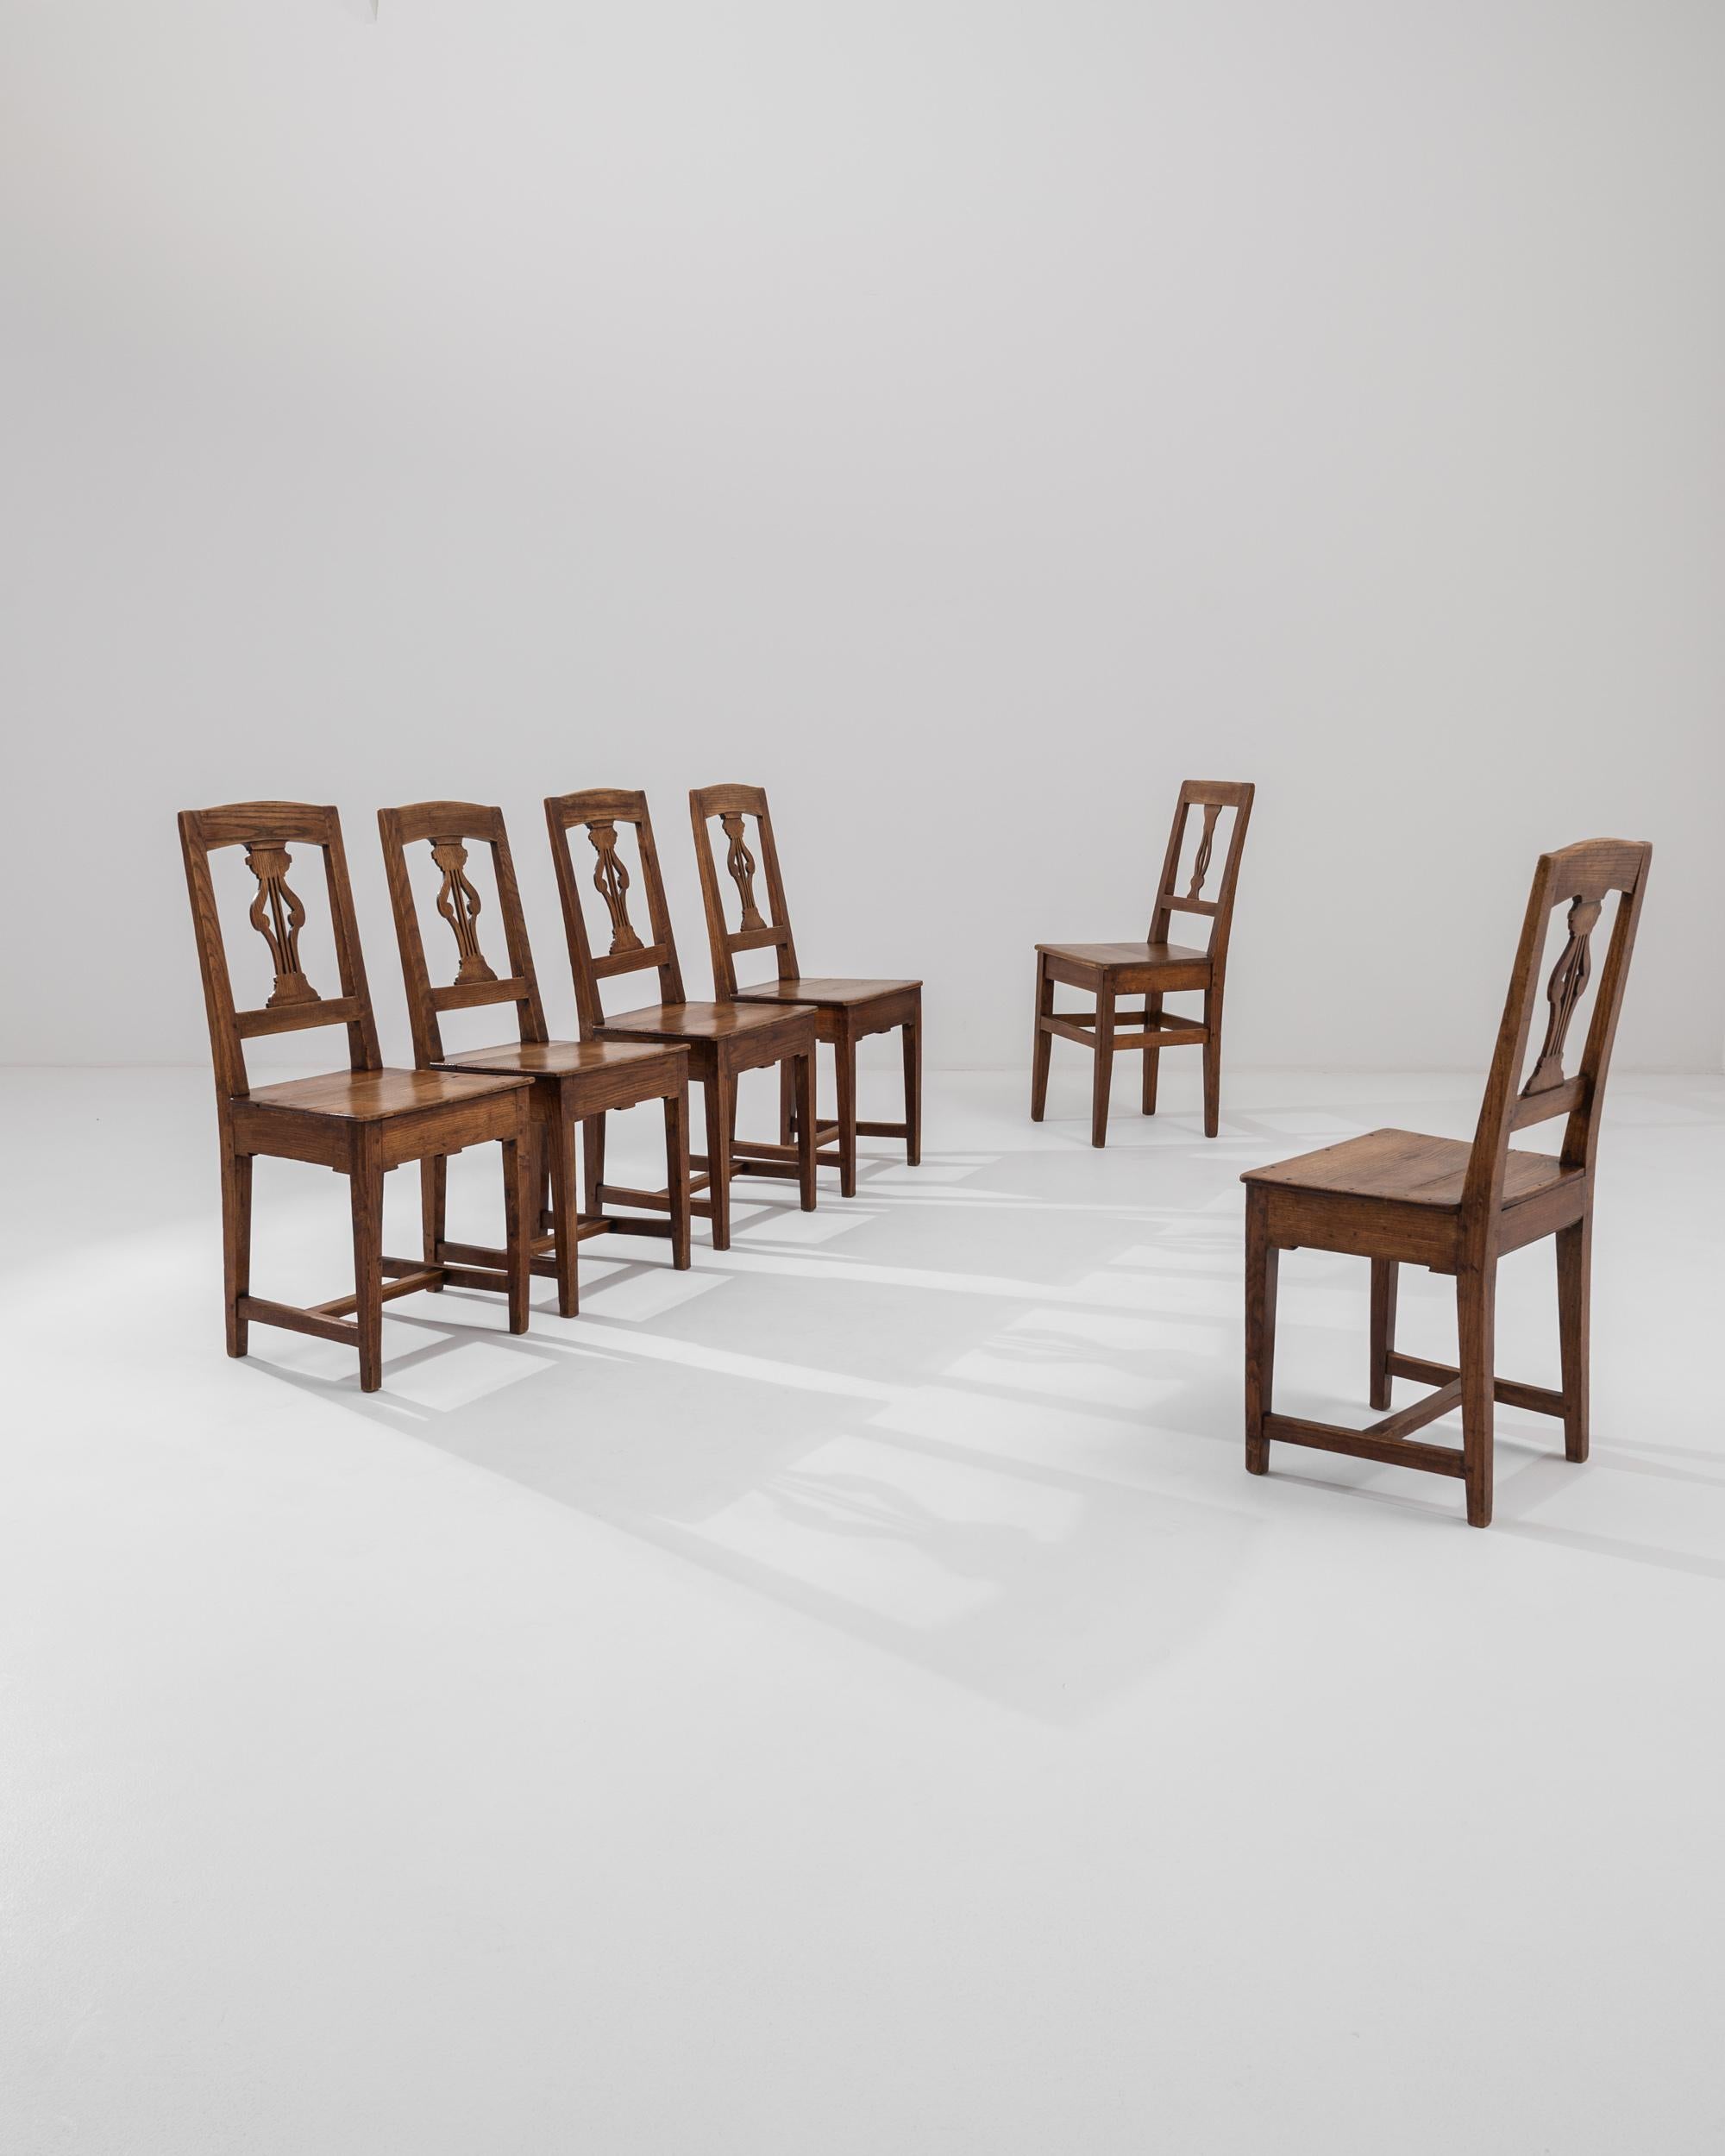 Dieser Satz von sechs Esszimmerstühlen aus der Jahrhundertwende verbindet eine anmutige Form mit einer schönen Patina. Das in Frankreich hergestellte Design ist von der schlichten Eleganz der Biedermeier-Möbel inspiriert. Leierförmige Leisten